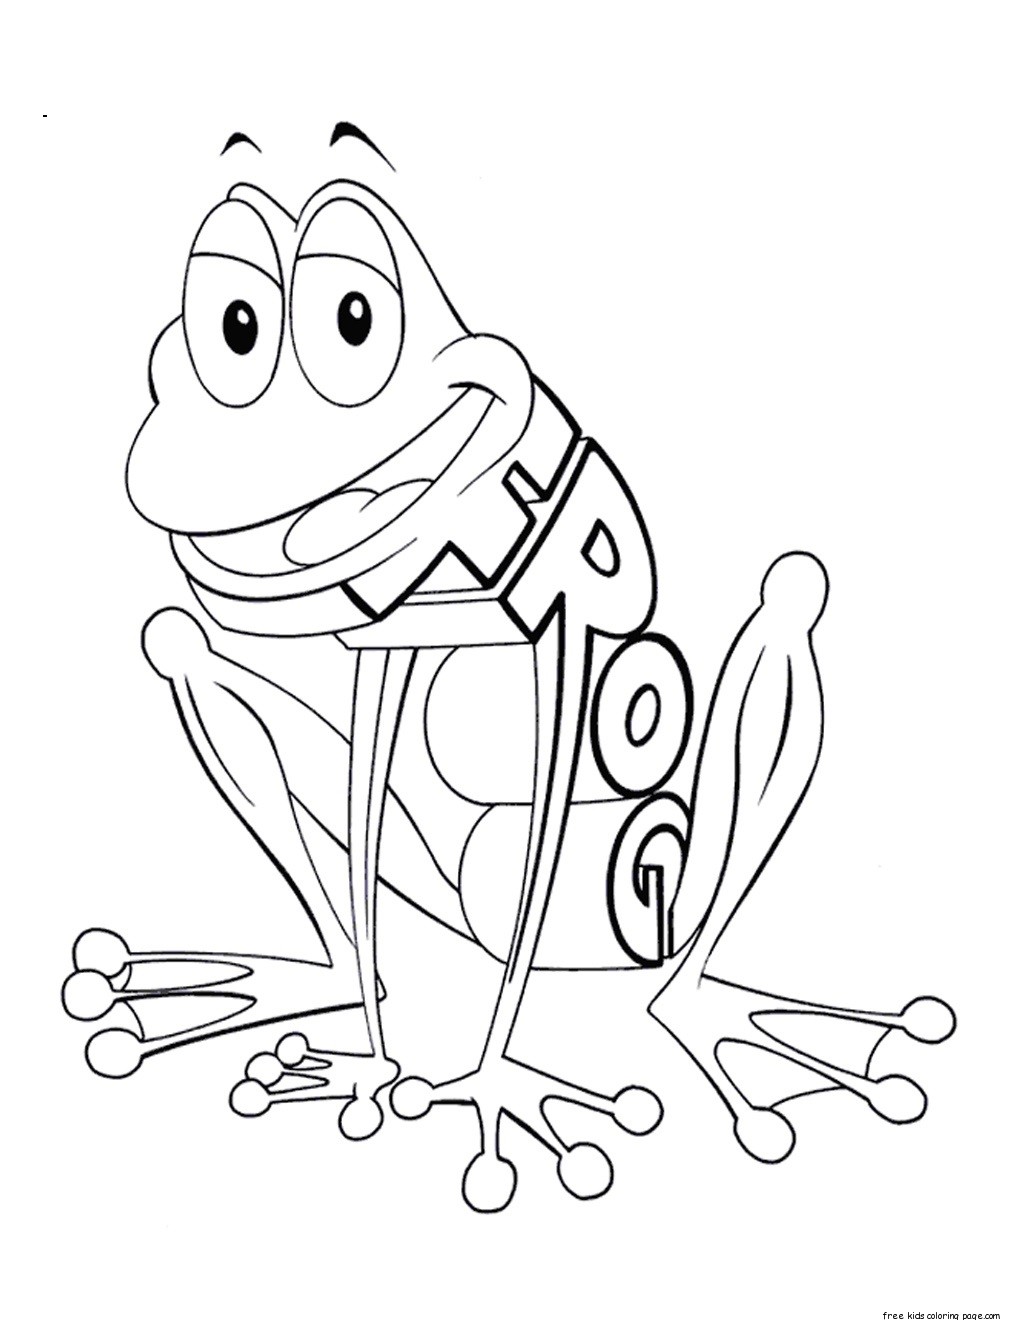 Print out Alphabet worksheets Frog